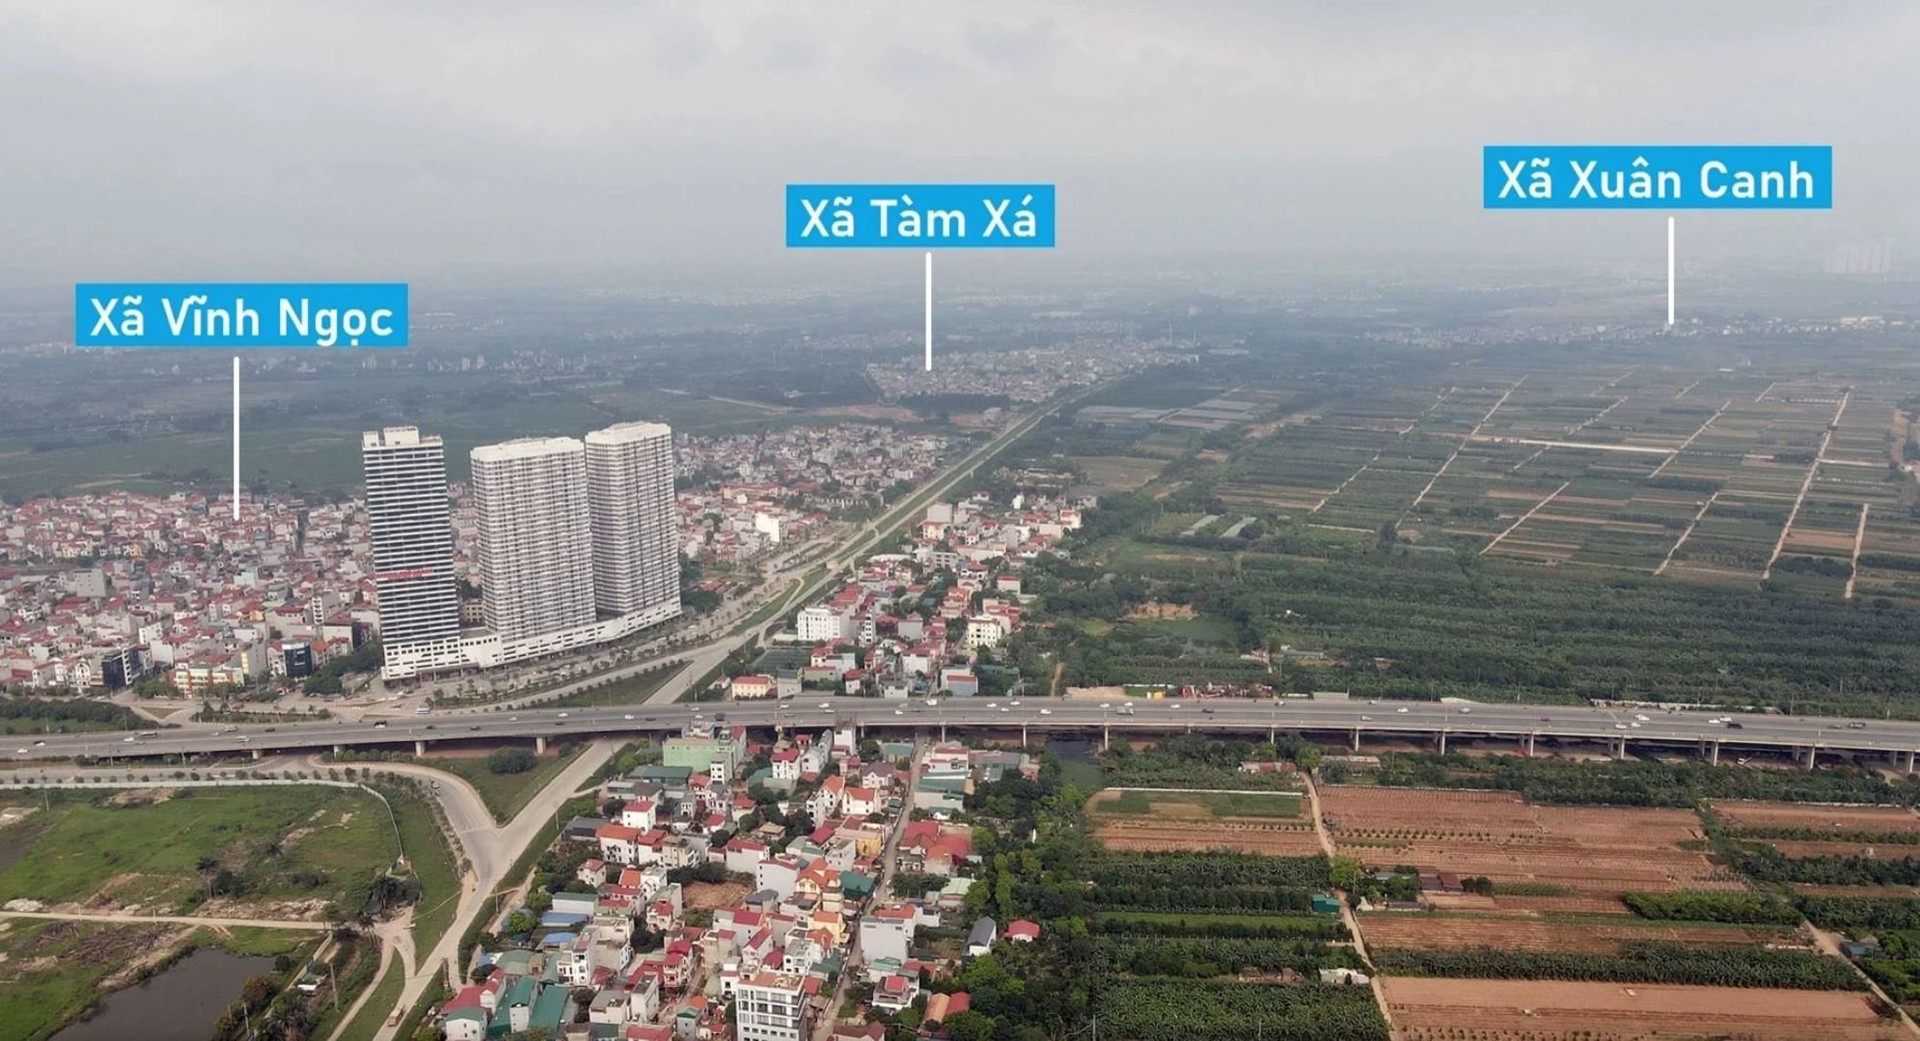 Liên danh Vingroup - Thái Sơn - Long Hải muốn làm khu đô thị thông minh 1,4 tỷ USD ở Hà Nội